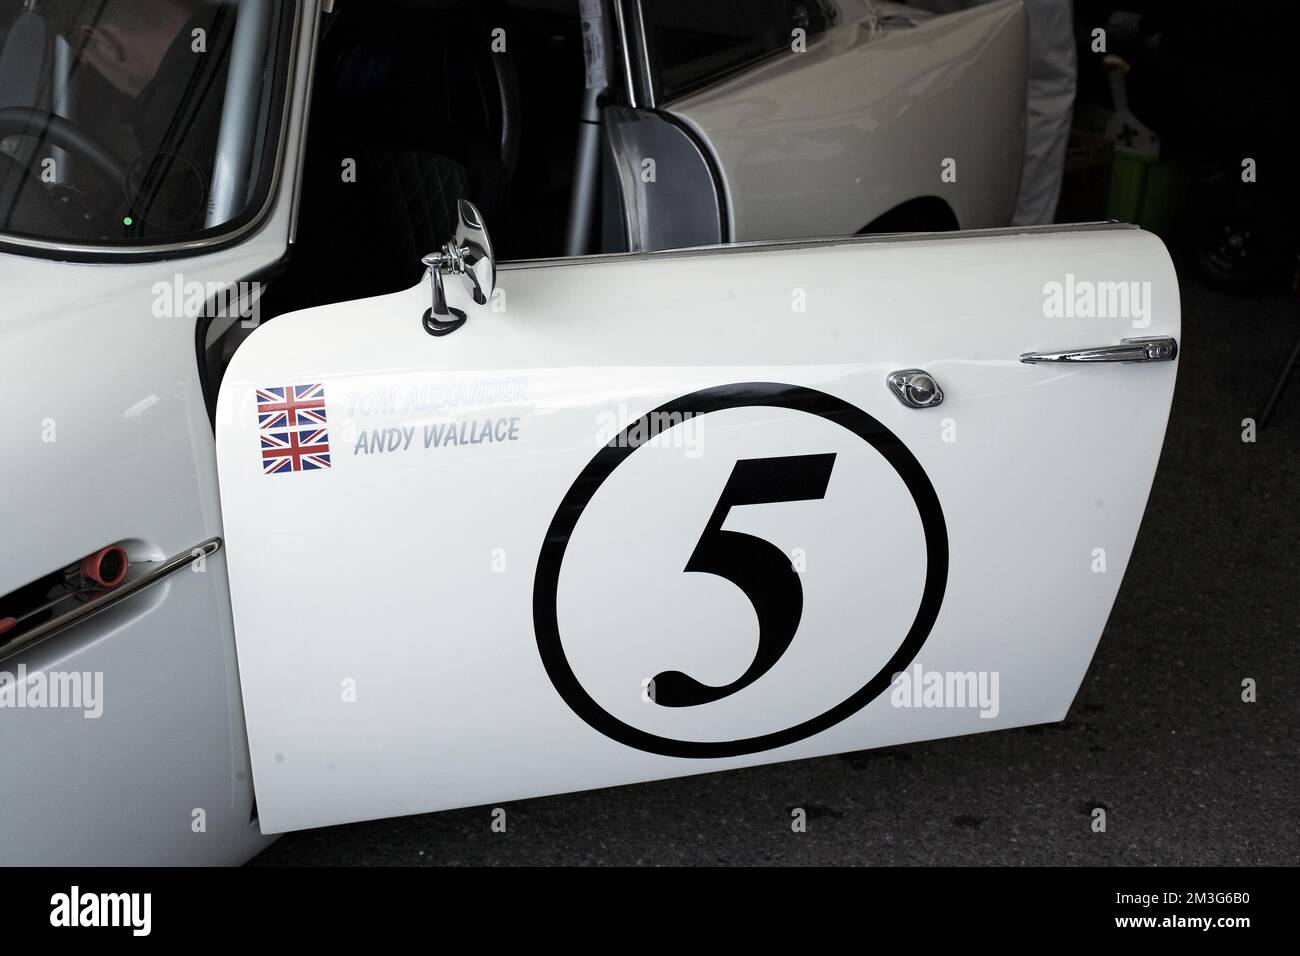 Porta auto da corsa da Andy Wallace driver auto da corsa, Goodwood Revival, Regno Unito Foto Stock